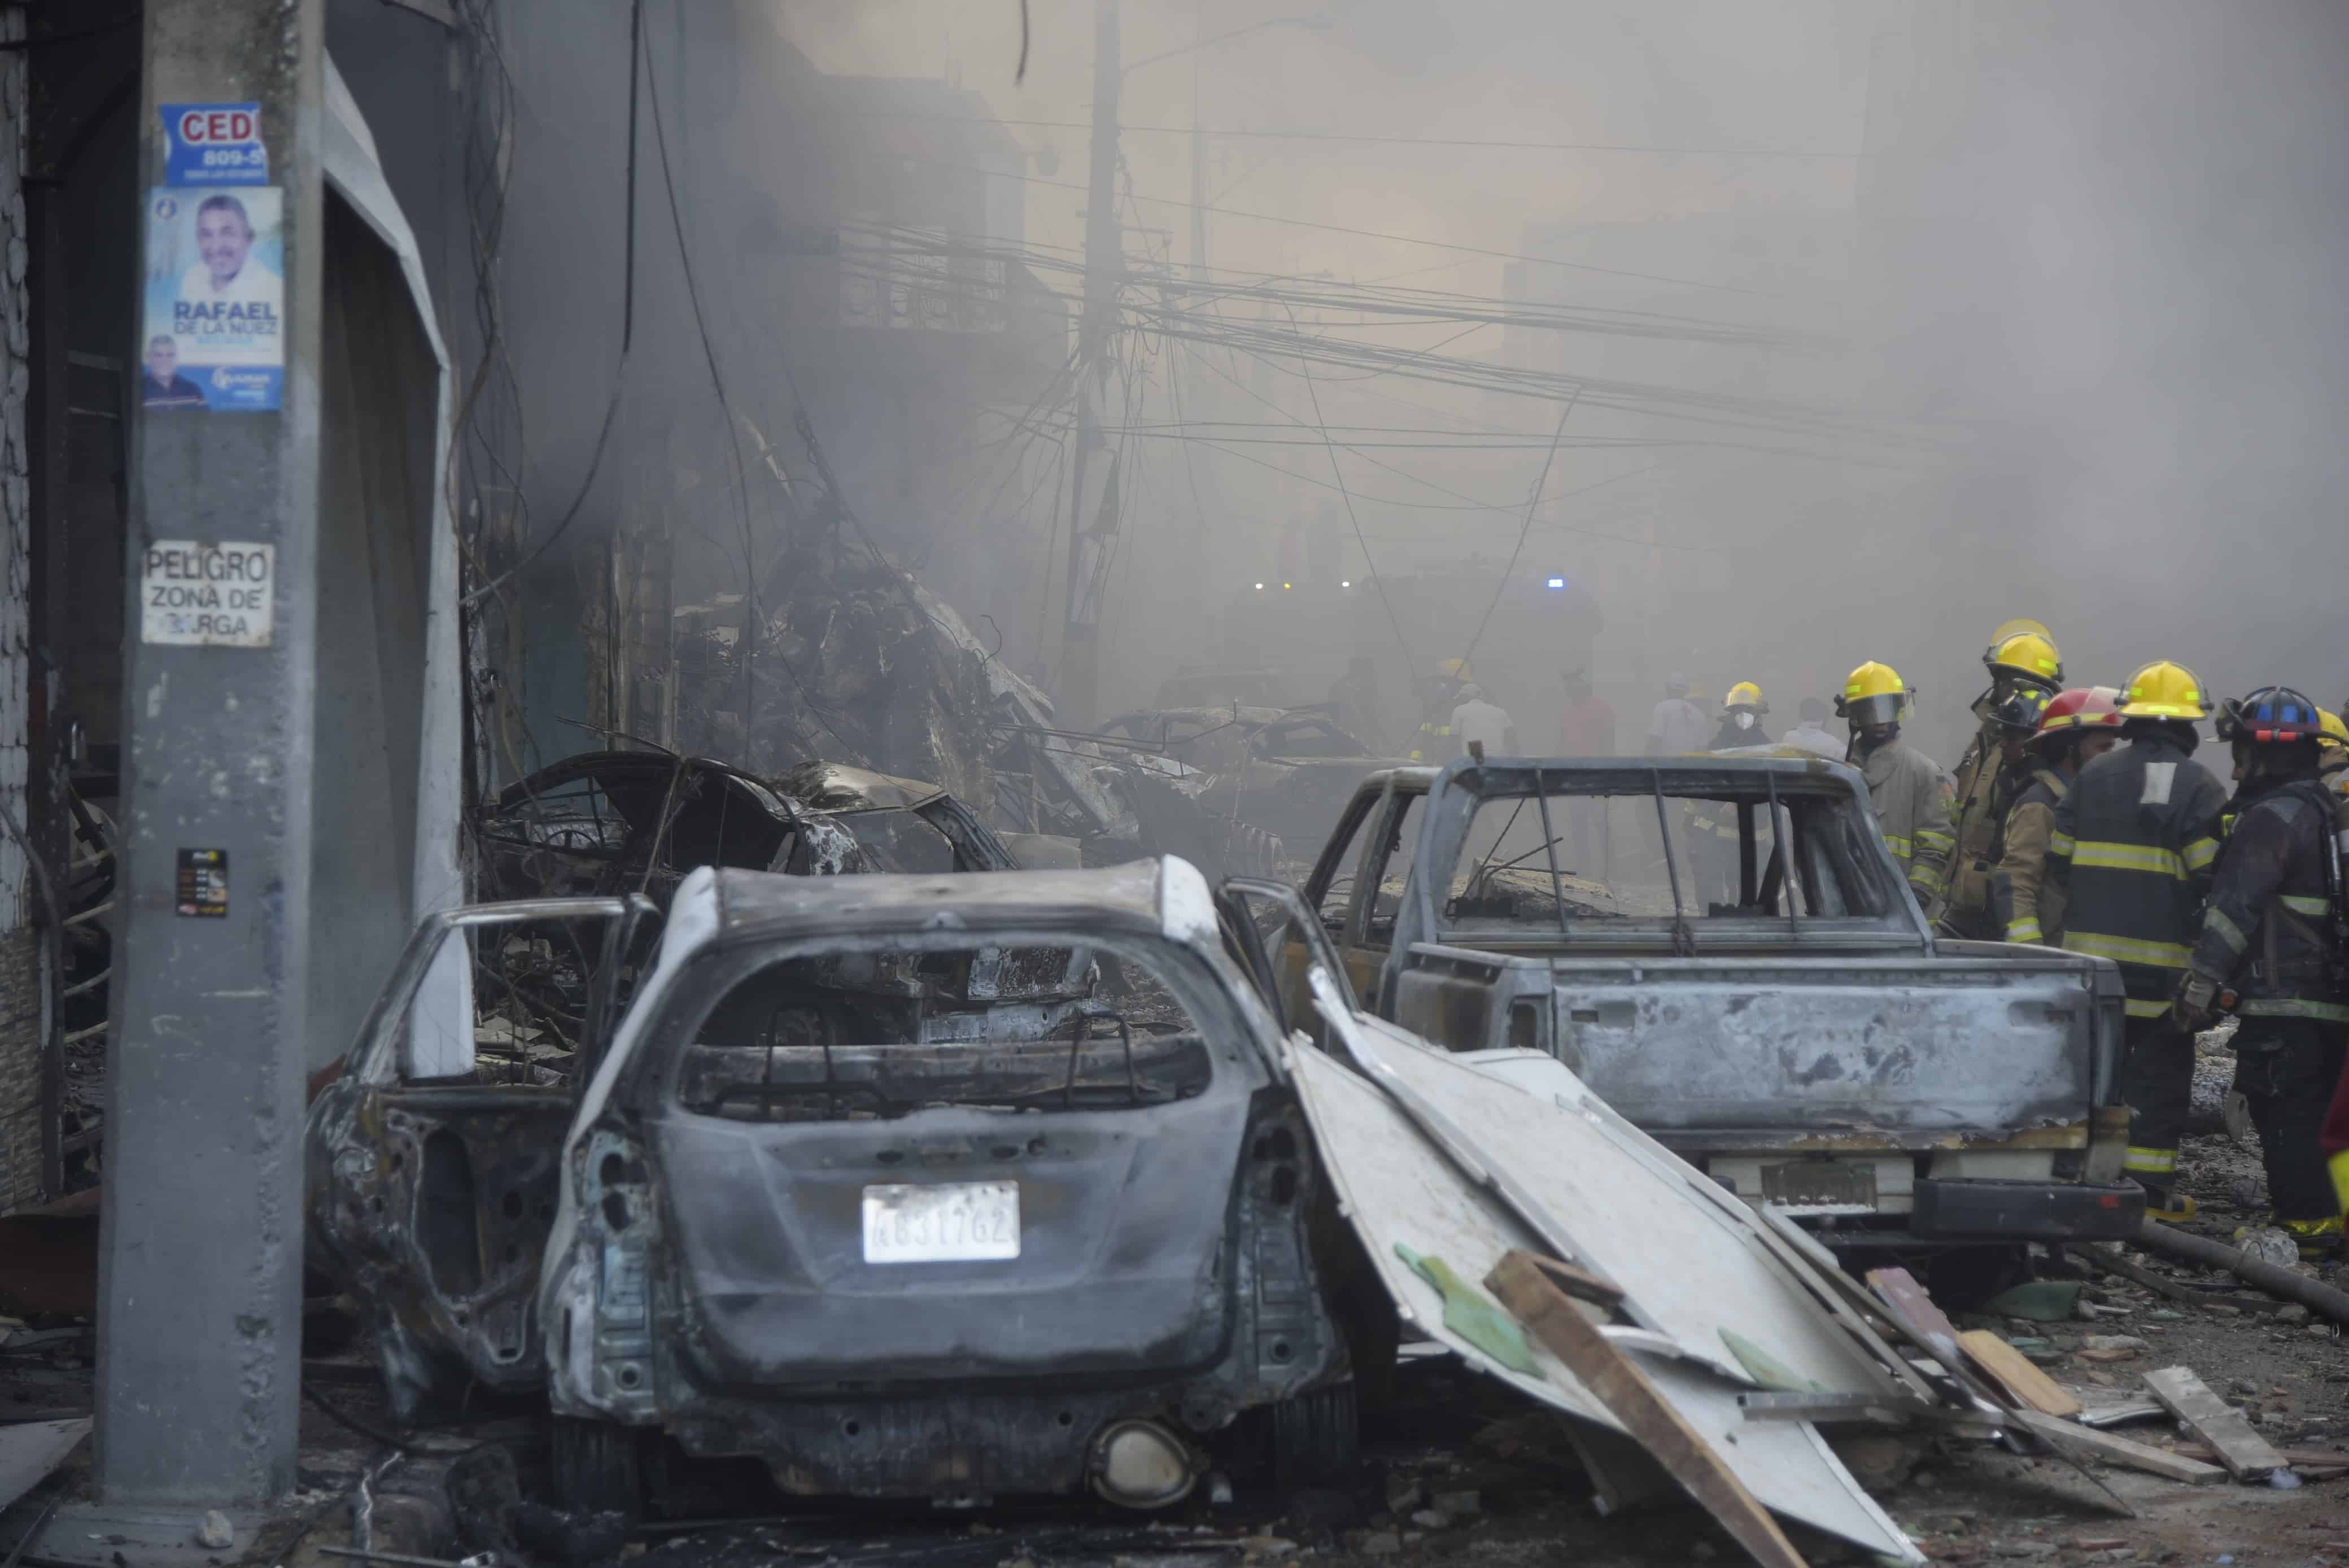 El fuego tras la explosión consumió vehículos y establecimientos comerciales aledaños.